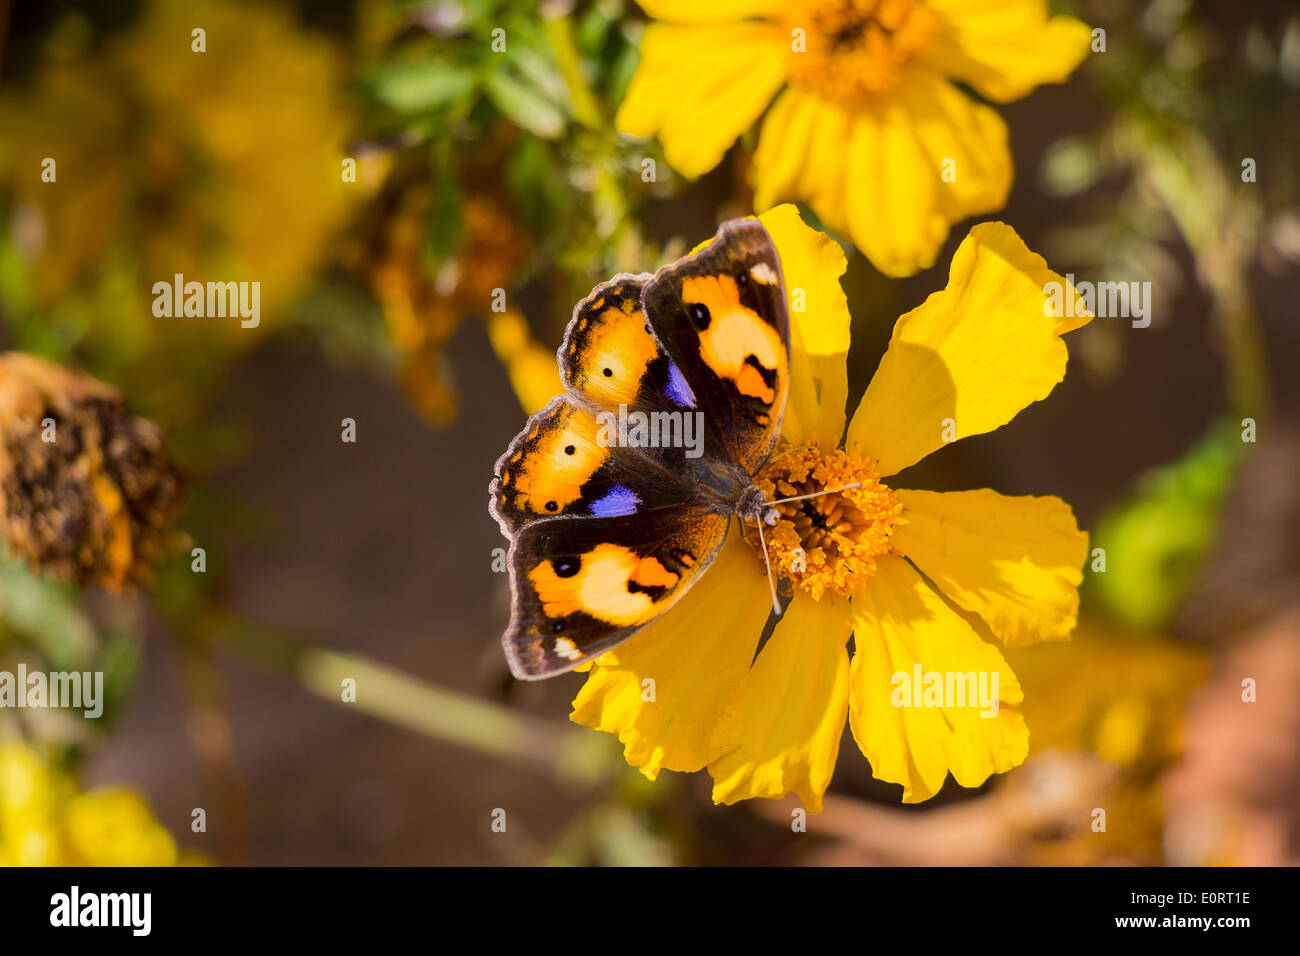 Giallo e Marrone Butterly con contrassegni di colore viola sul fiore giallo Foto Stock